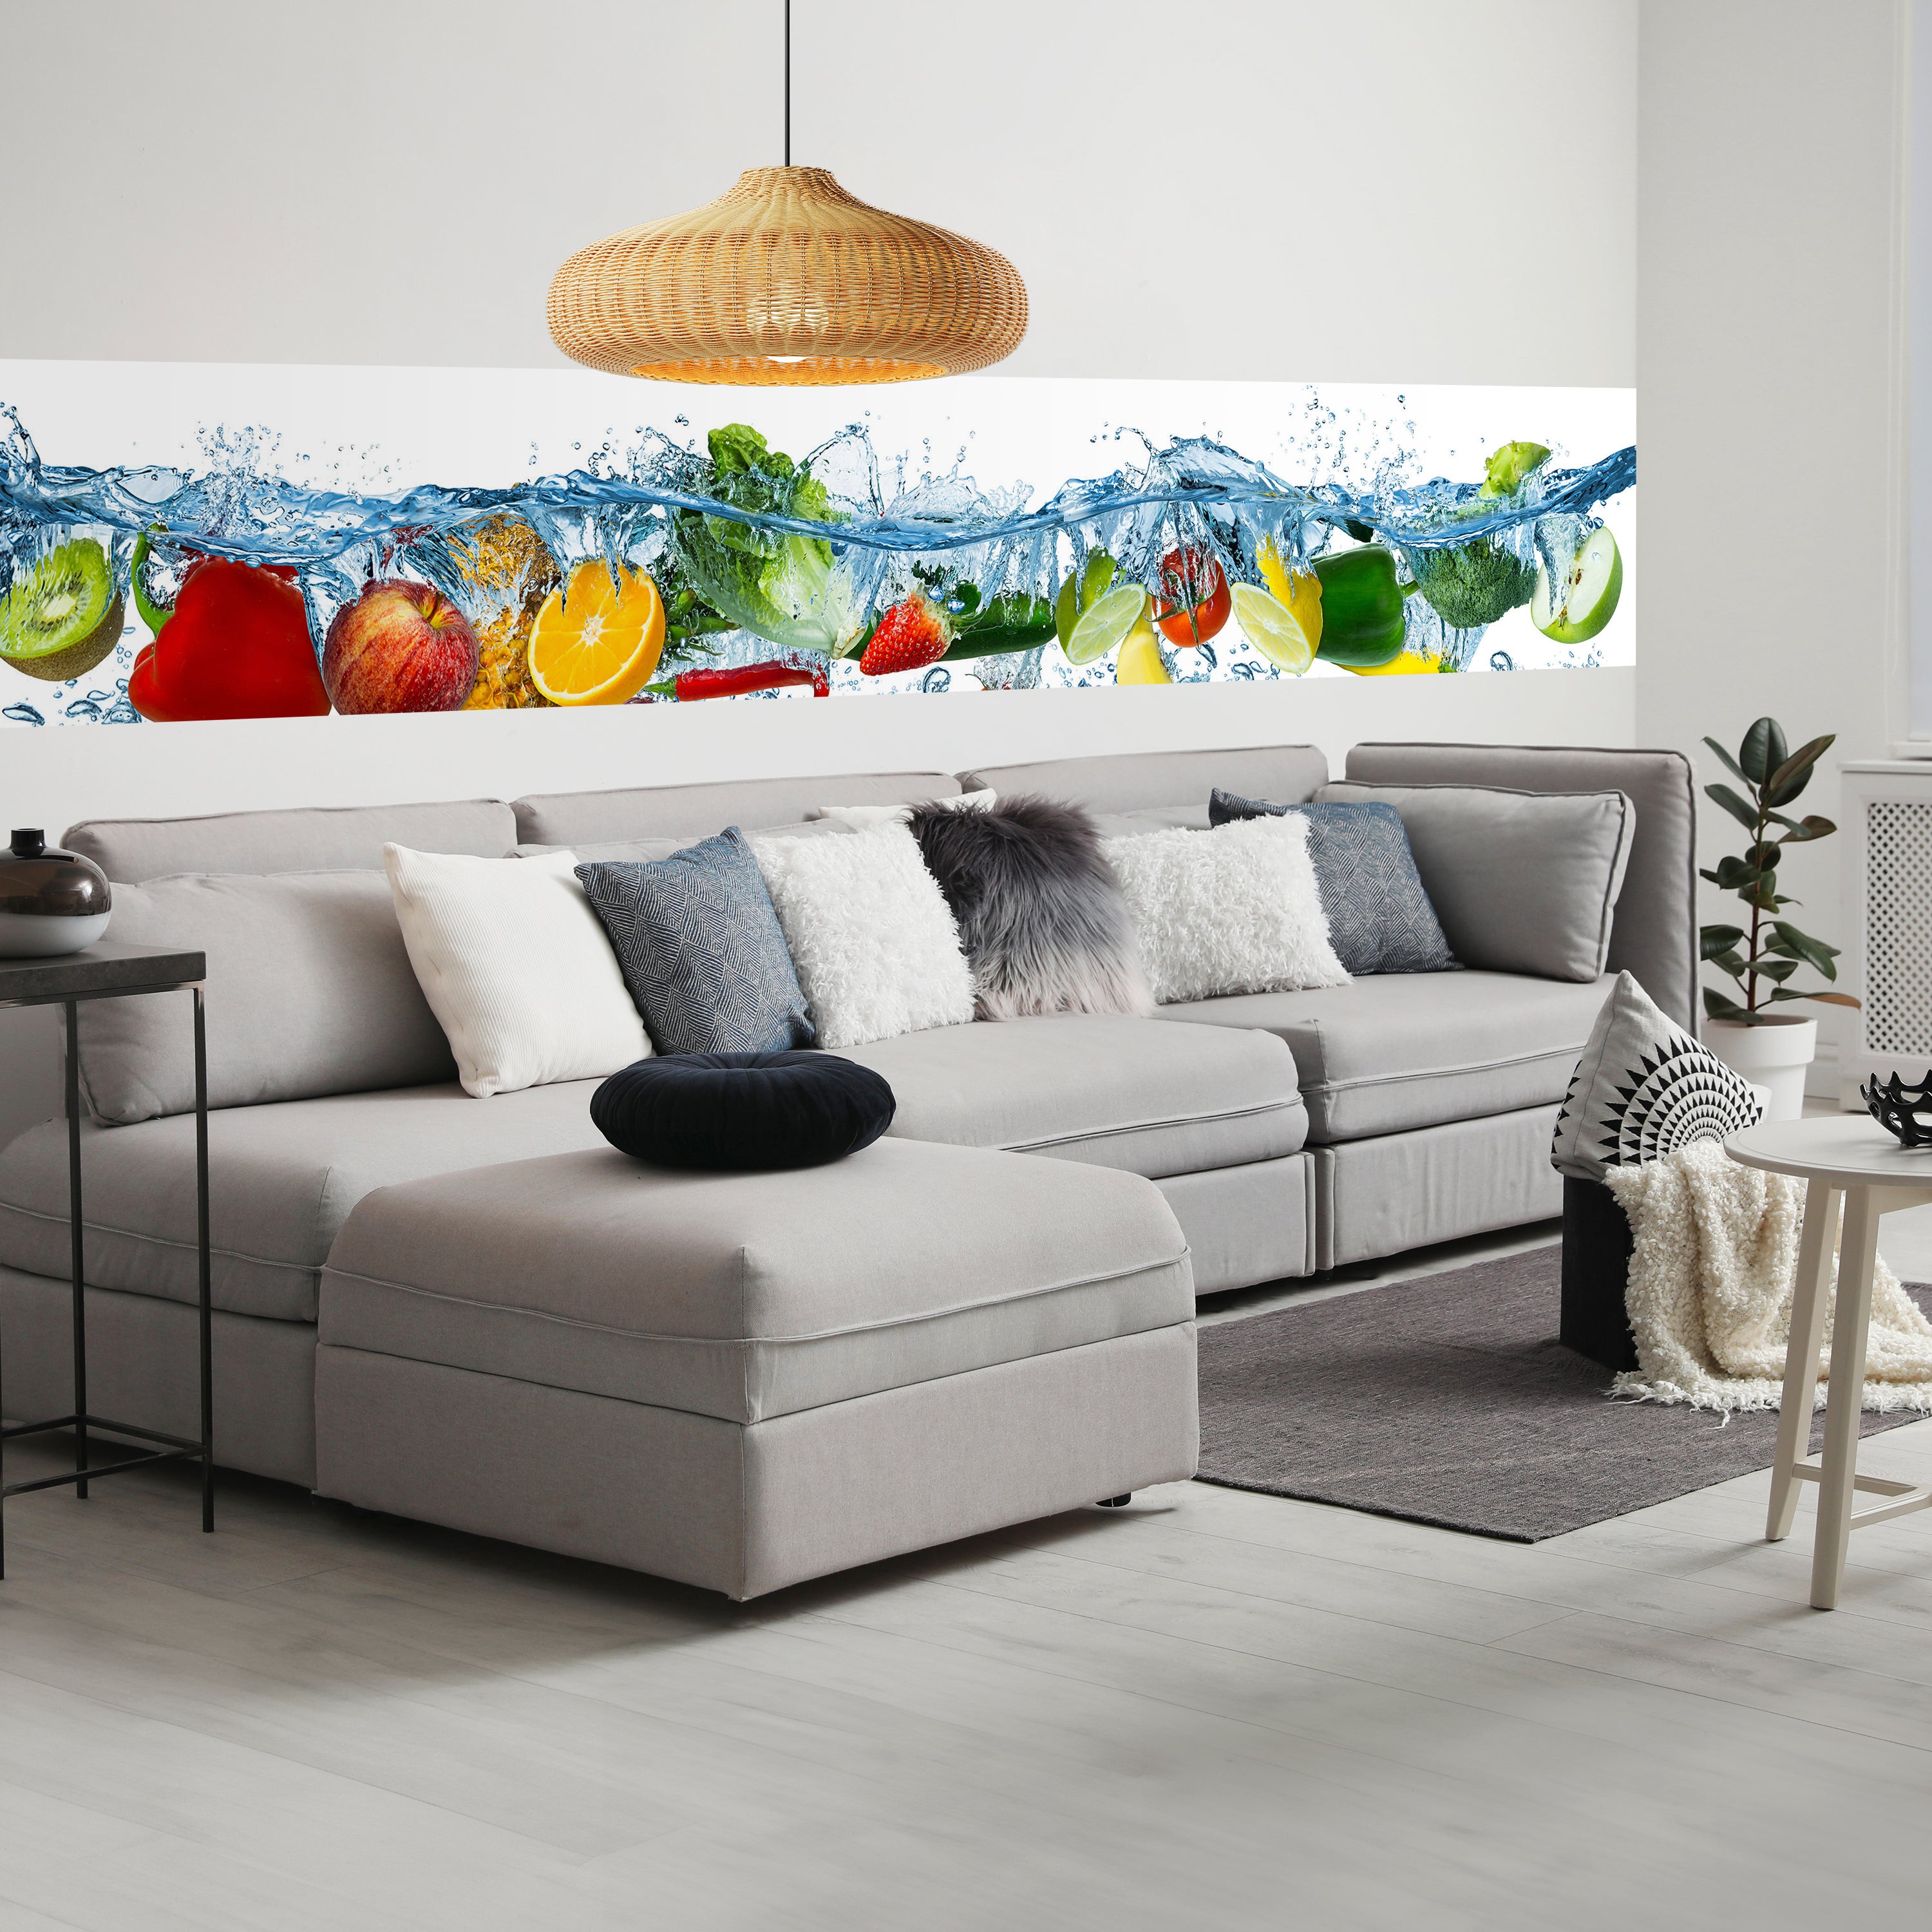 Panorama-Fototapete Obst im Wasser M0015 - Bild 1